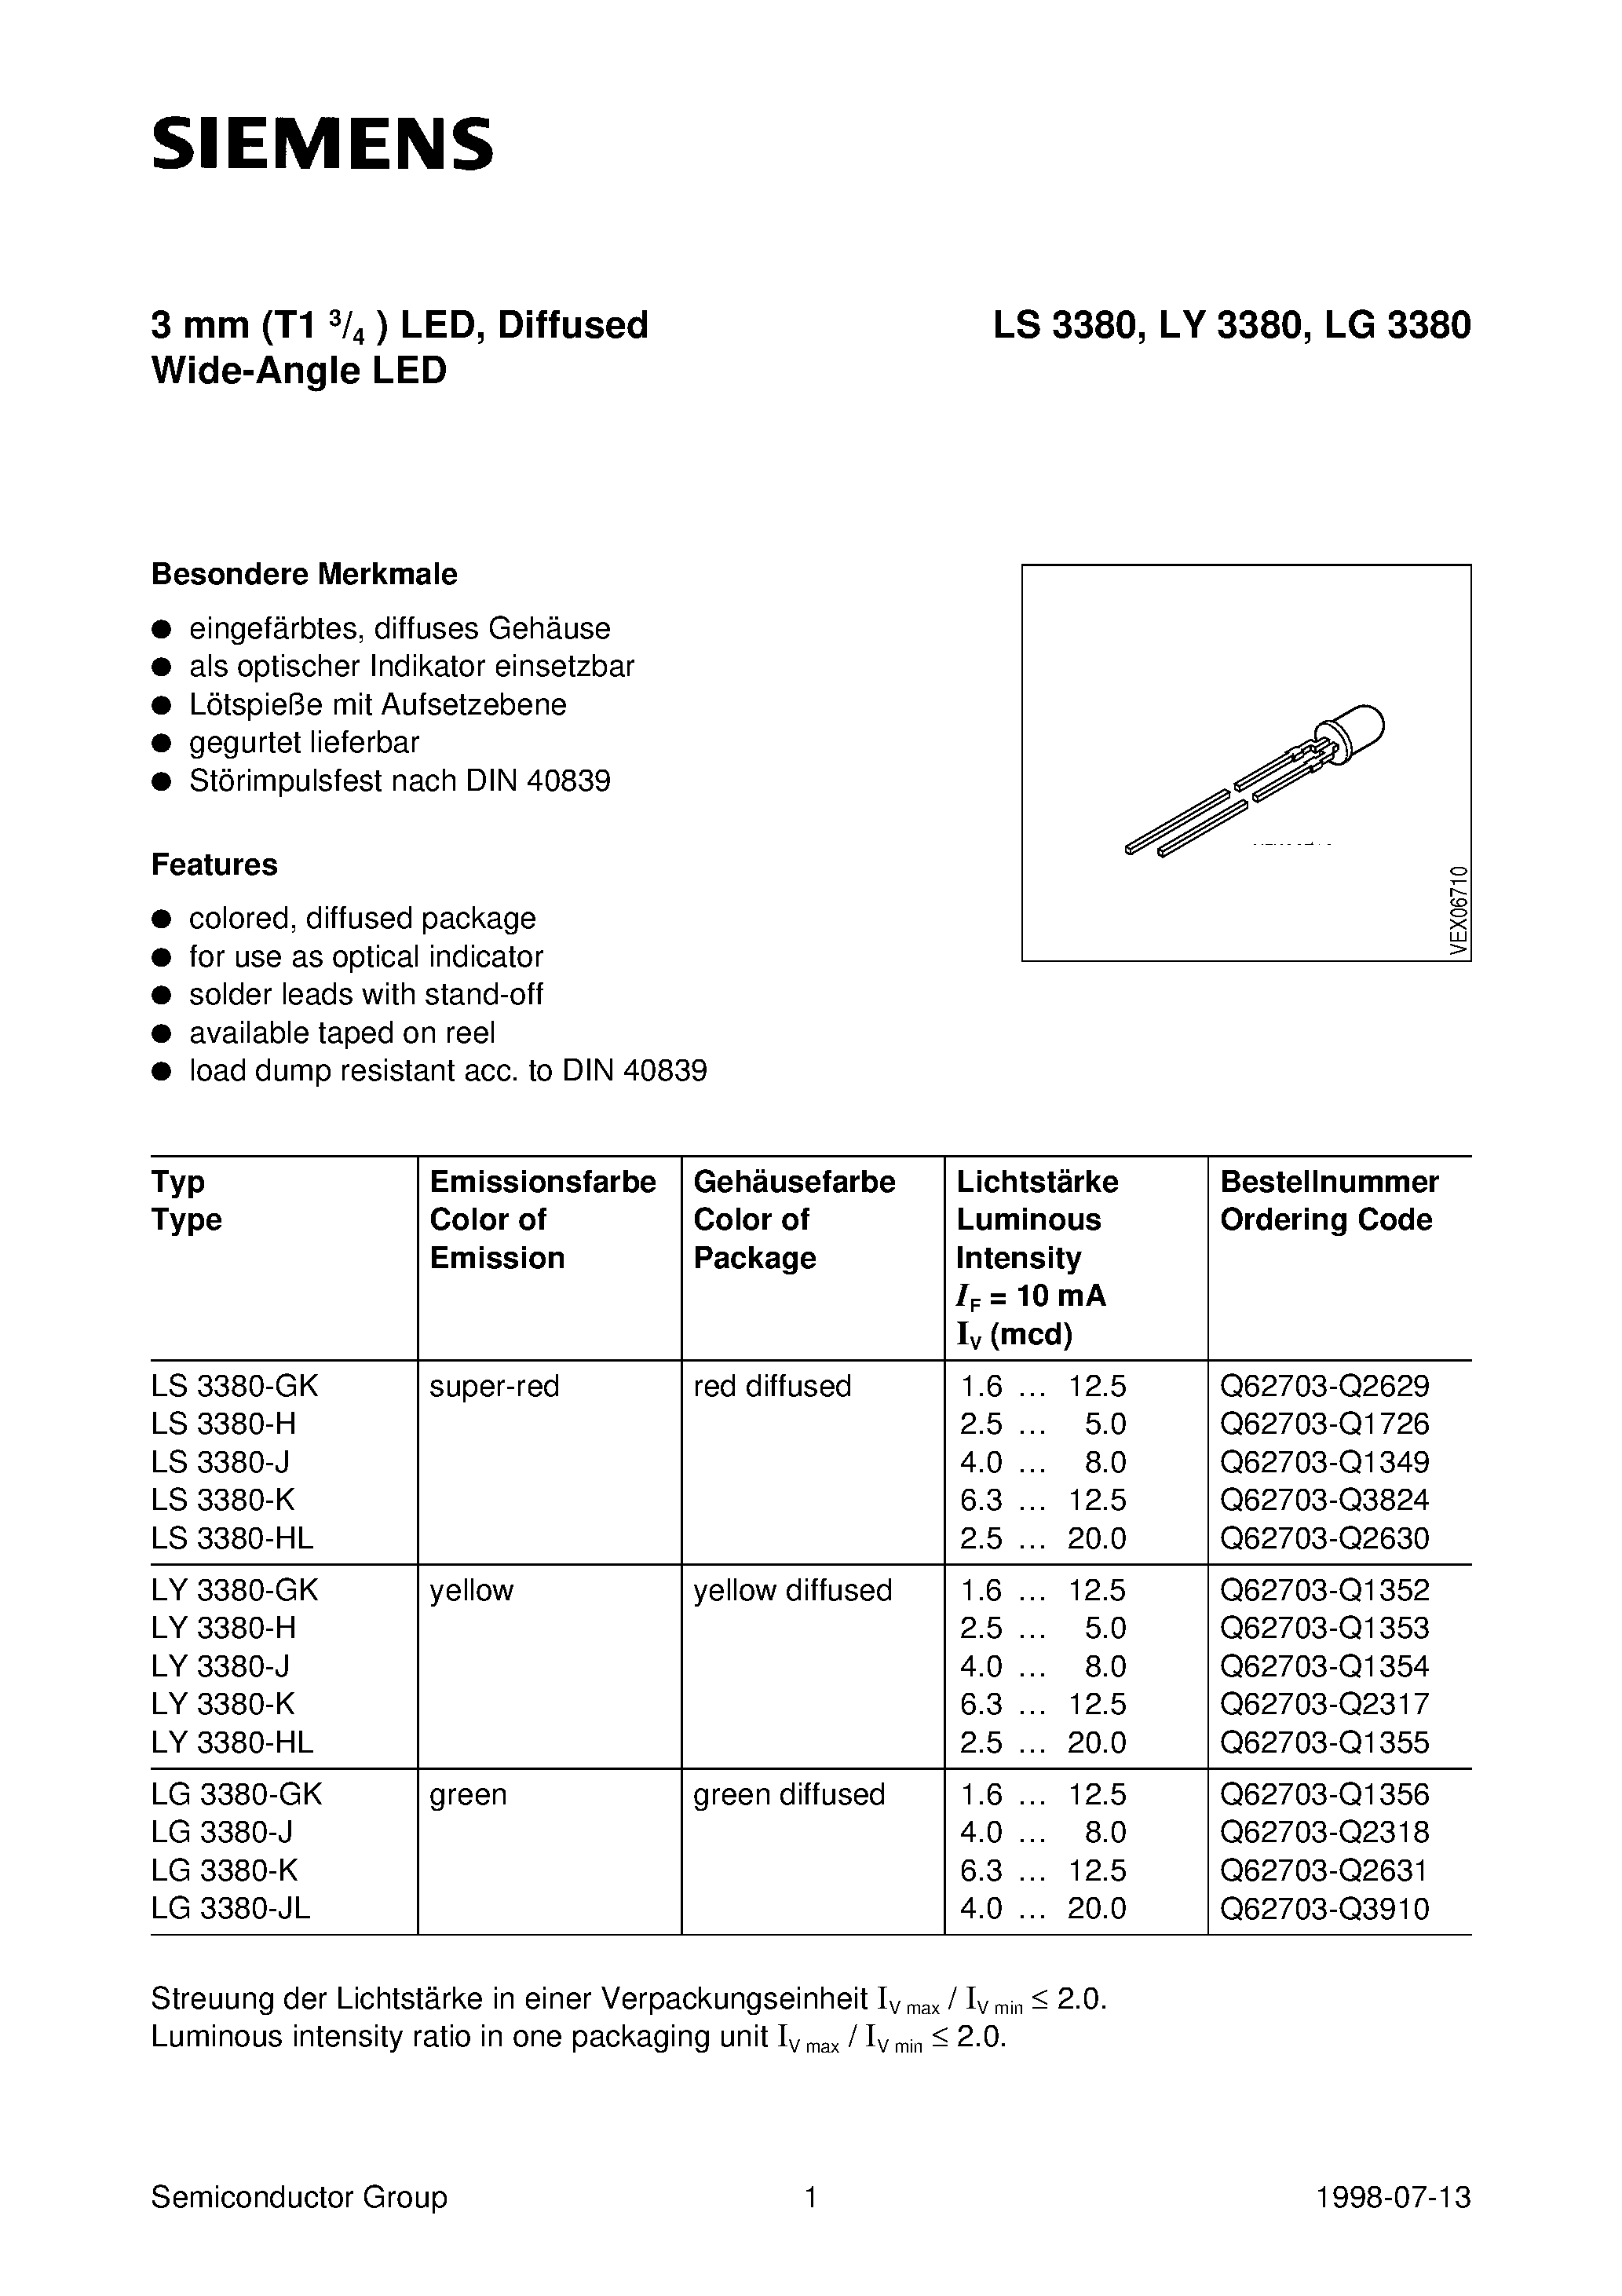 Даташит LS3380-K - 3 mm T1 3/4 LED / Diffused Wide-Angle LED страница 1